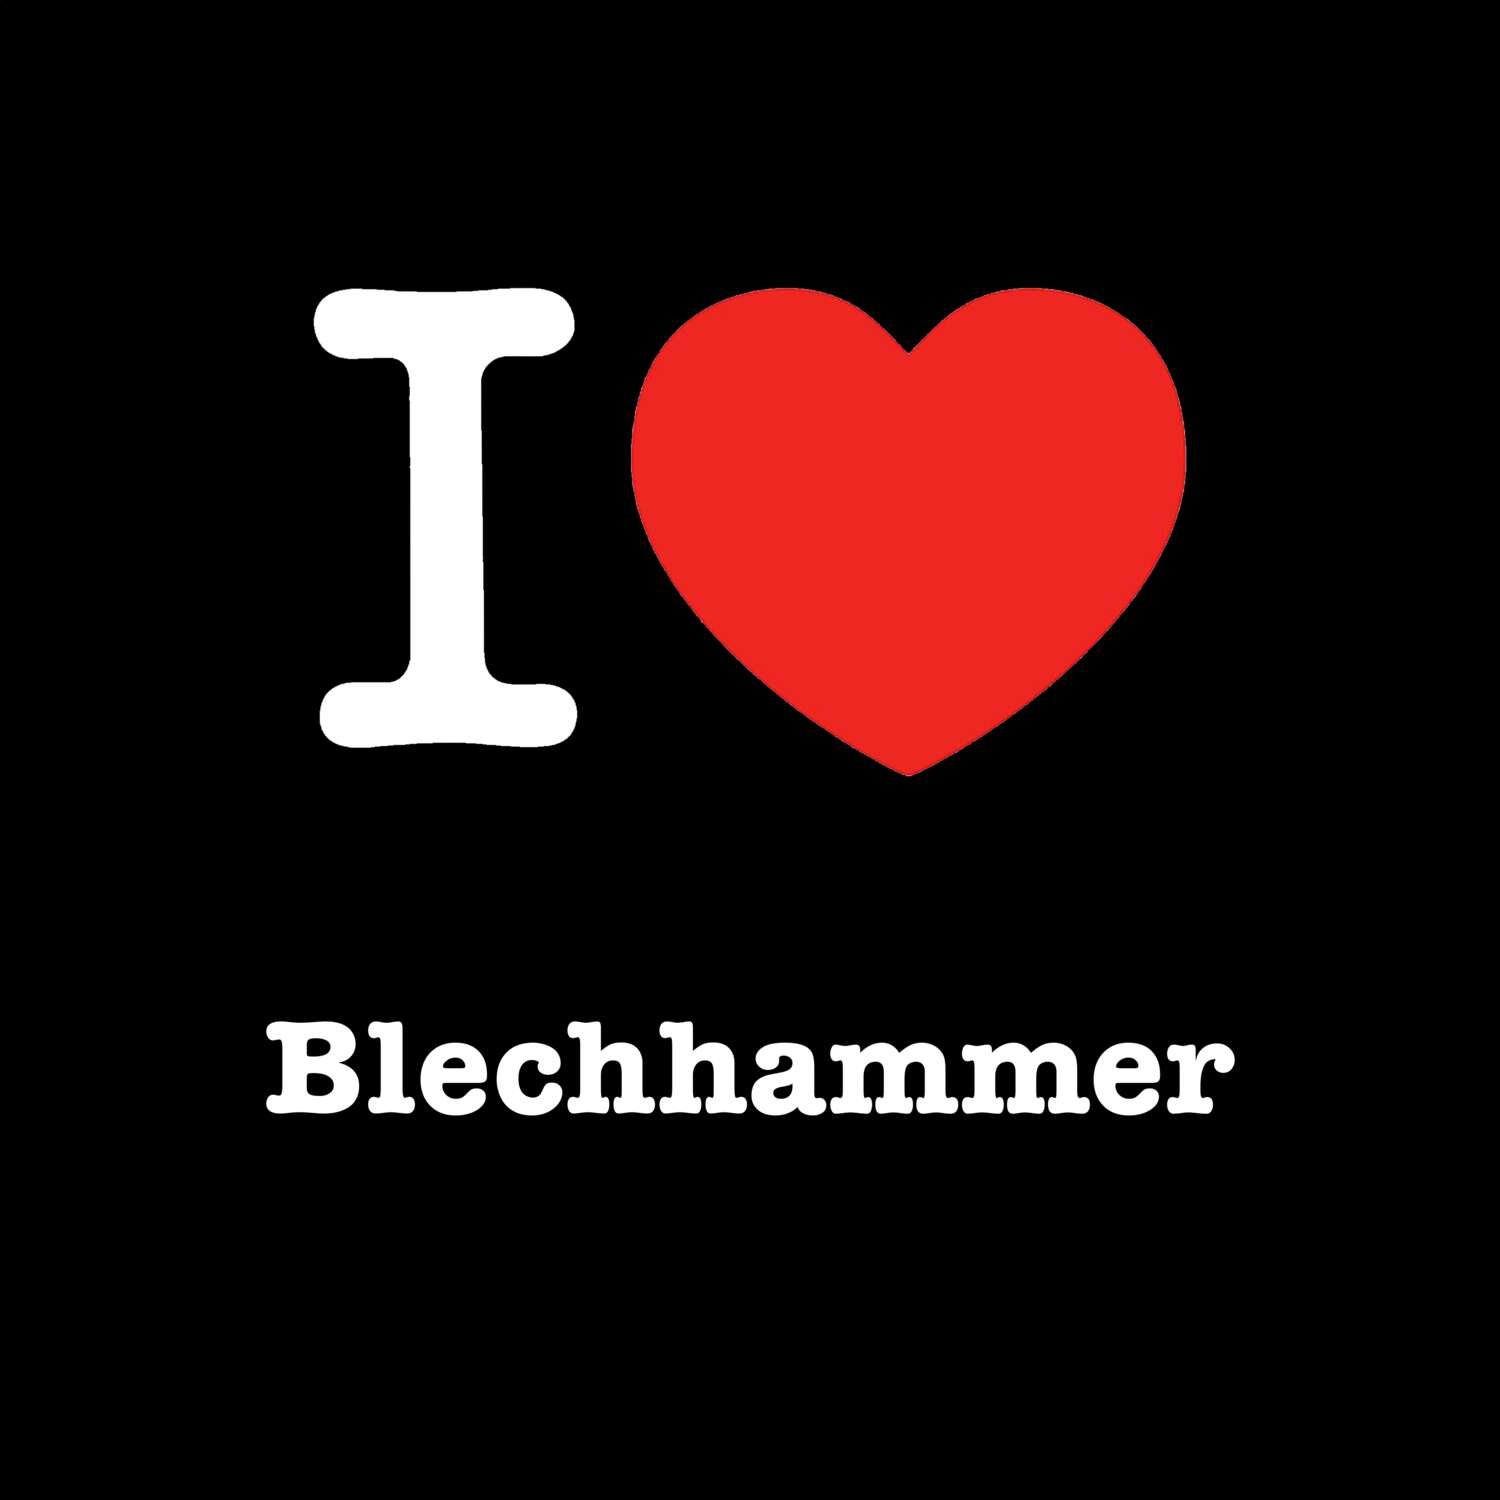 Blechhammer T-Shirt »I love«